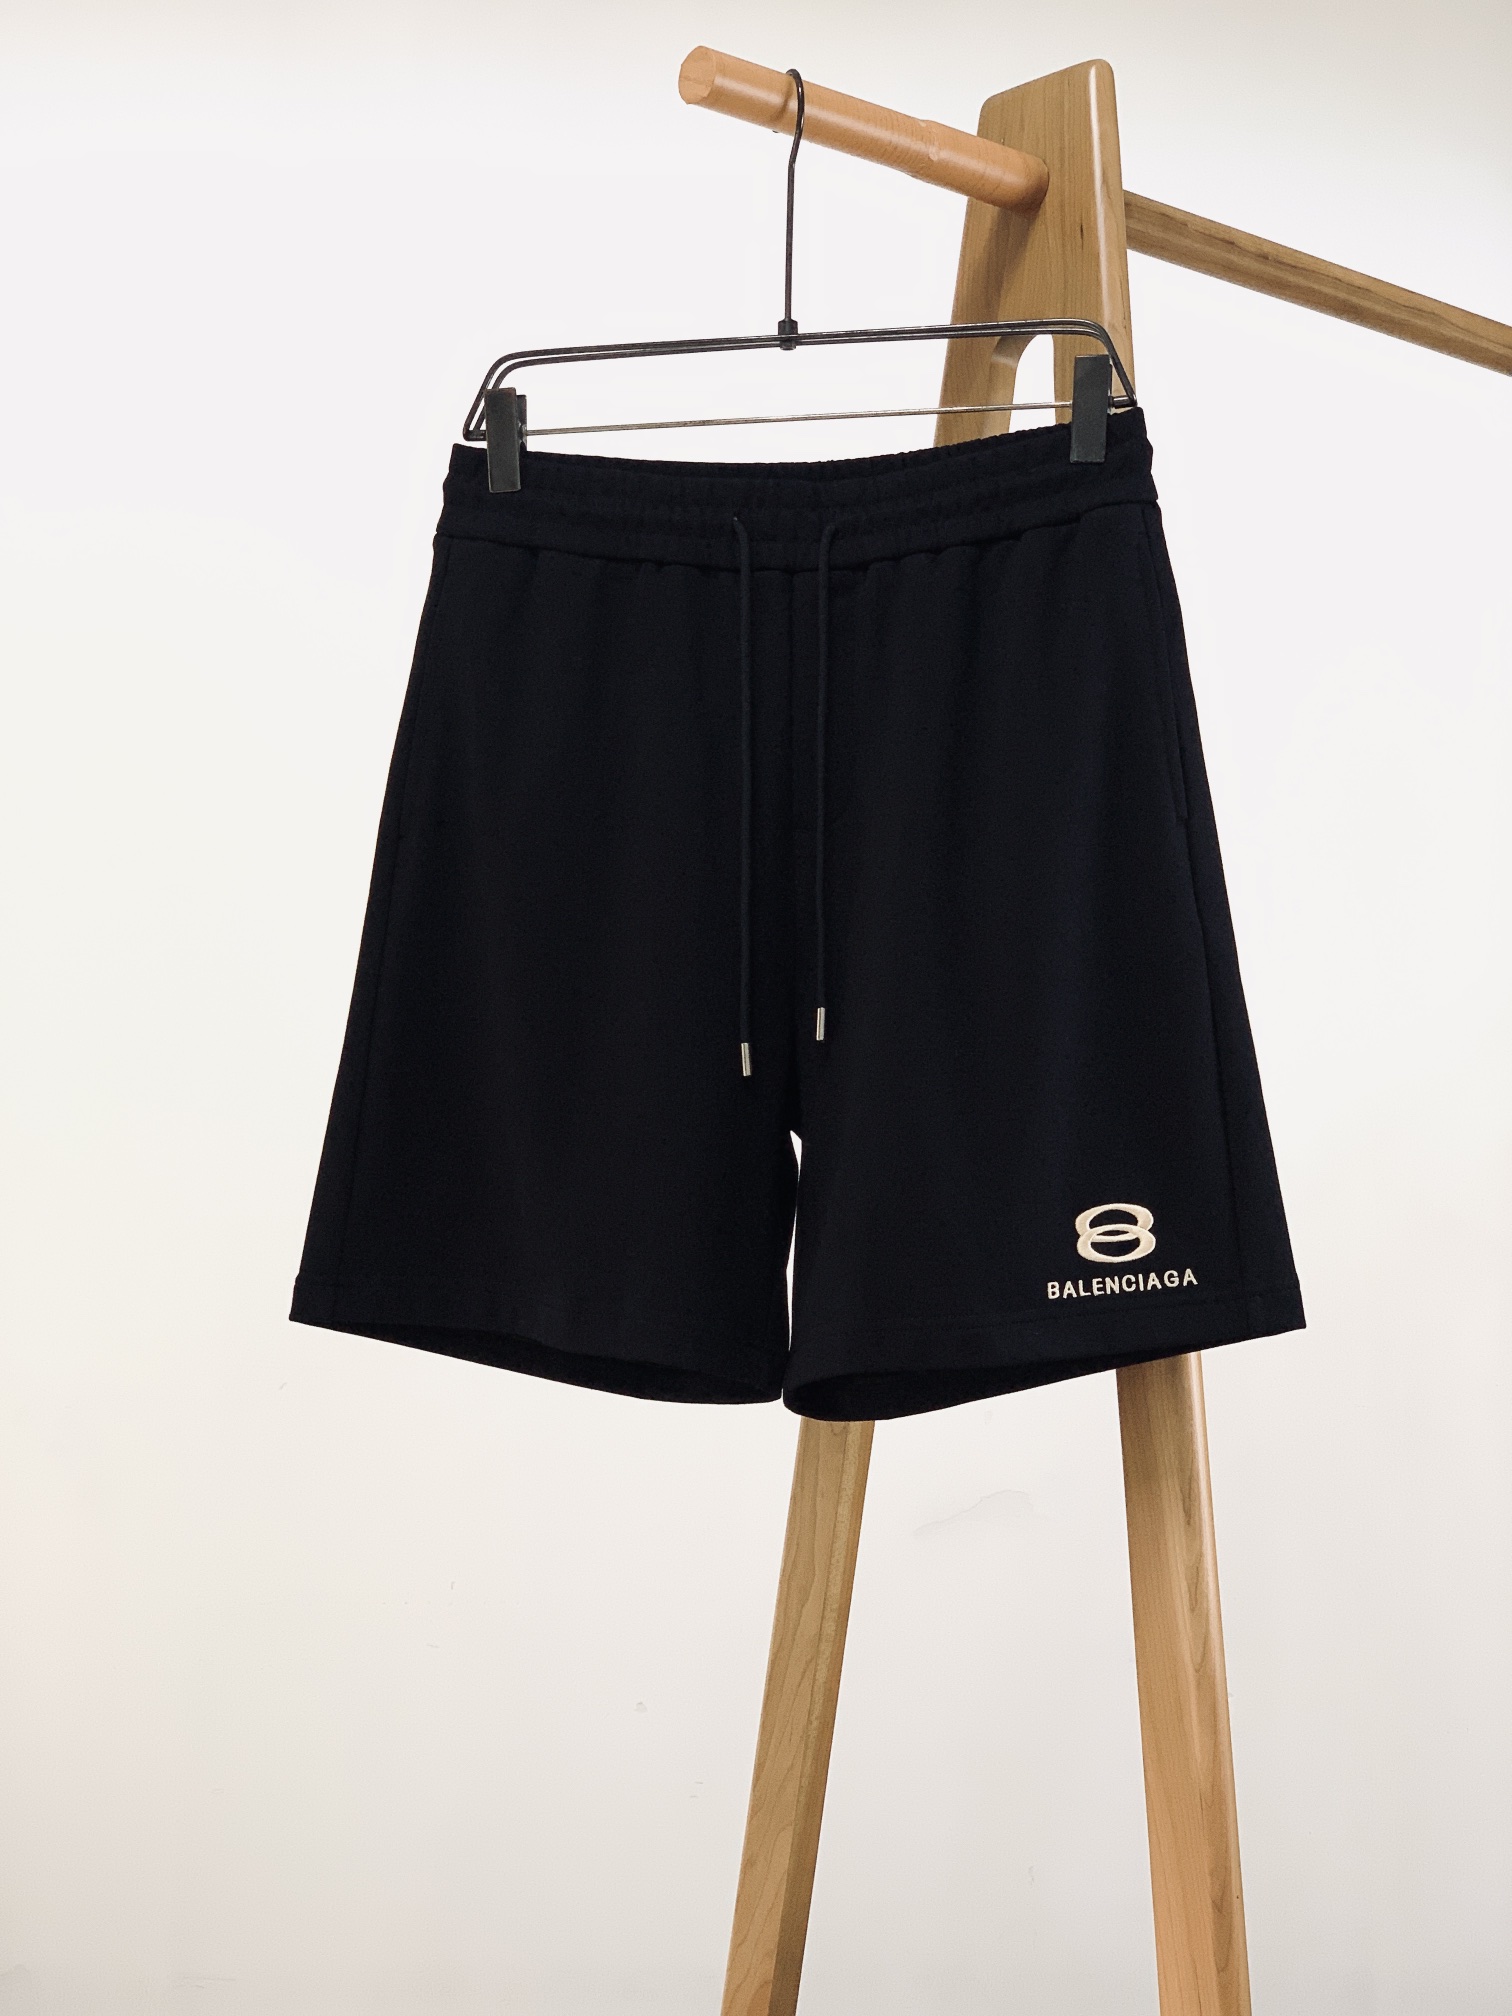 Balenciaga Clothing Shorts Embroidery Unisex Spring/Summer Collection